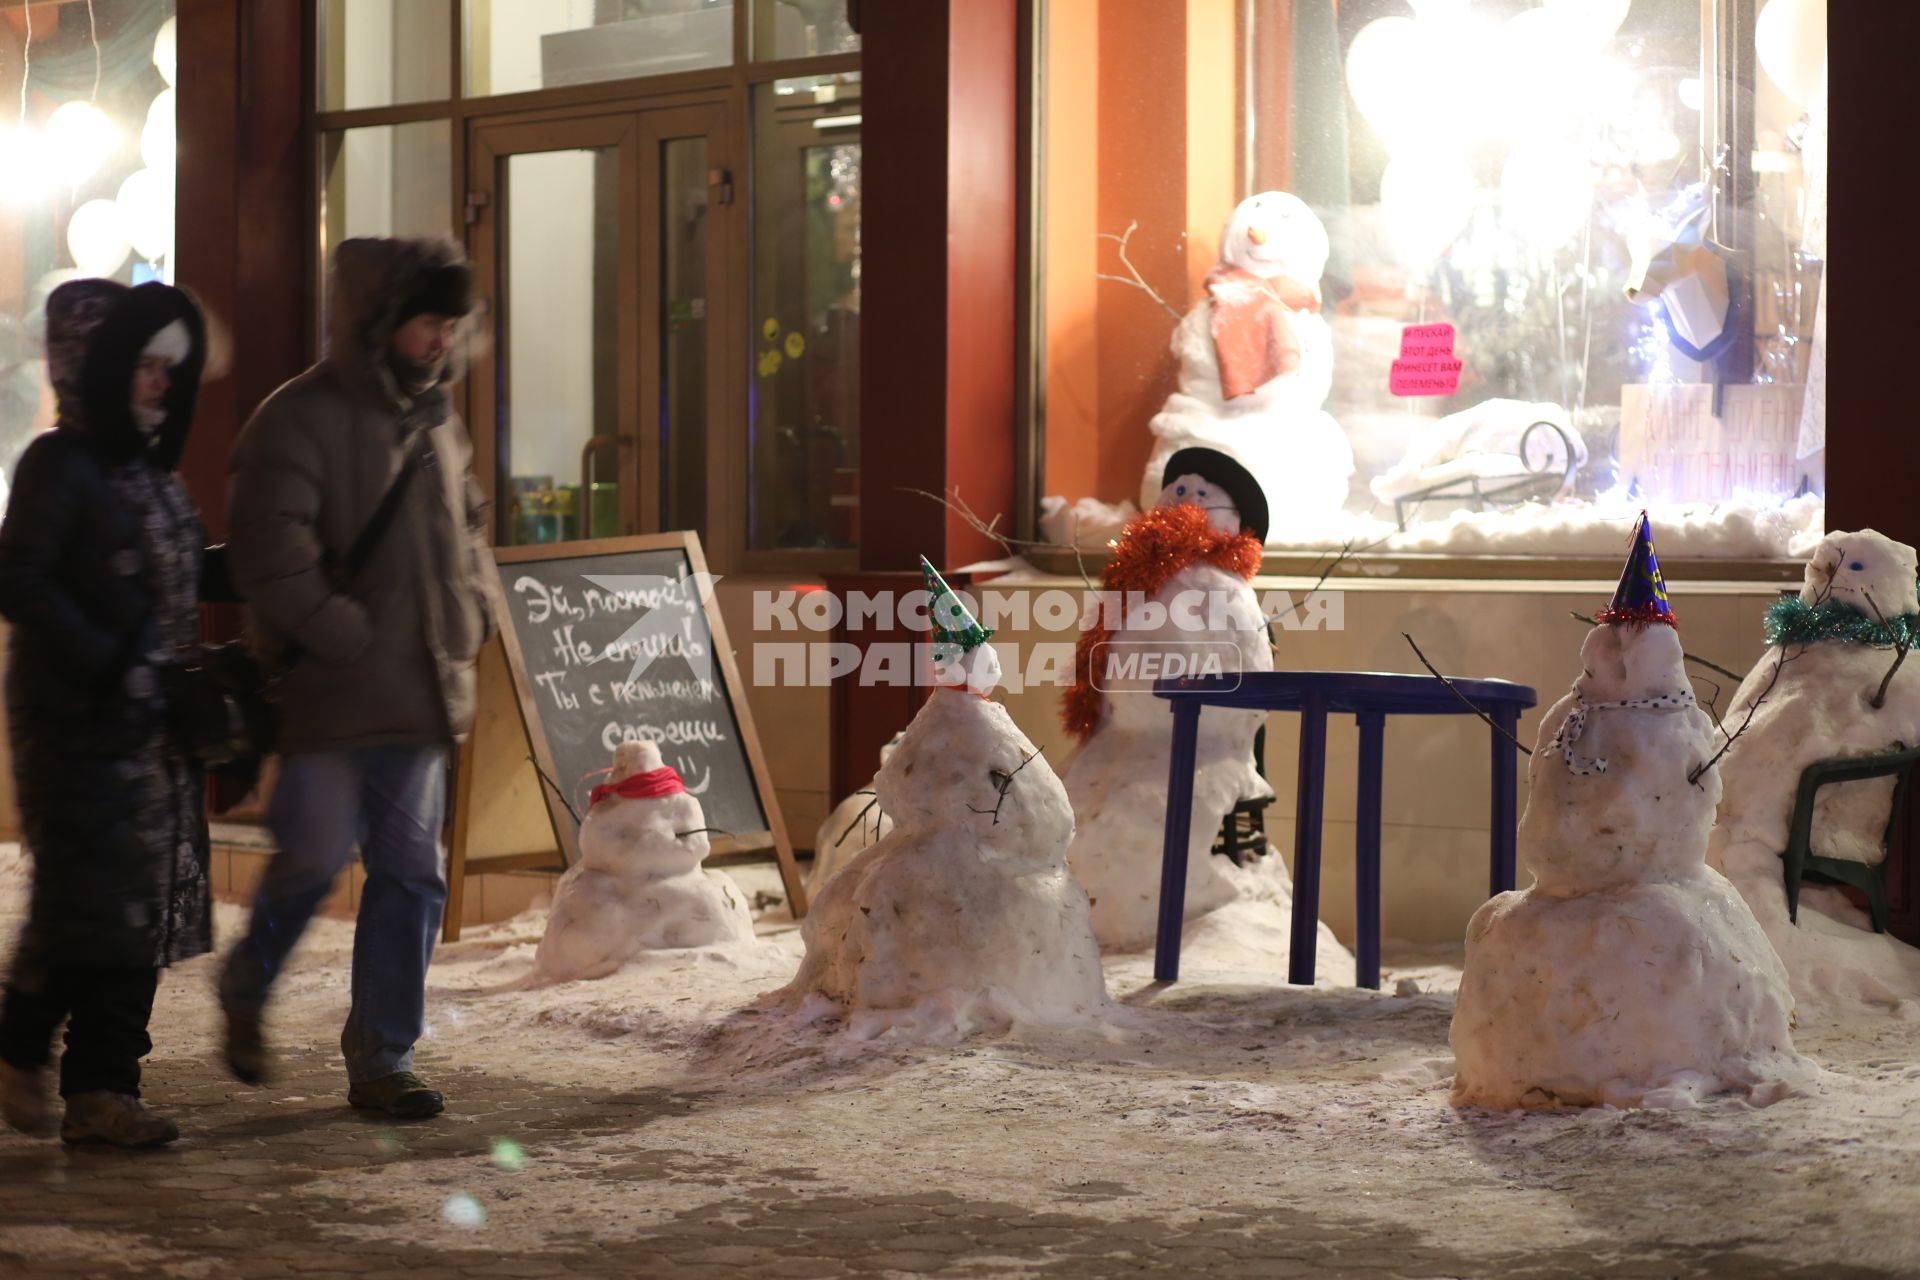 Красноярск. Снеговики на одной из улиц города.